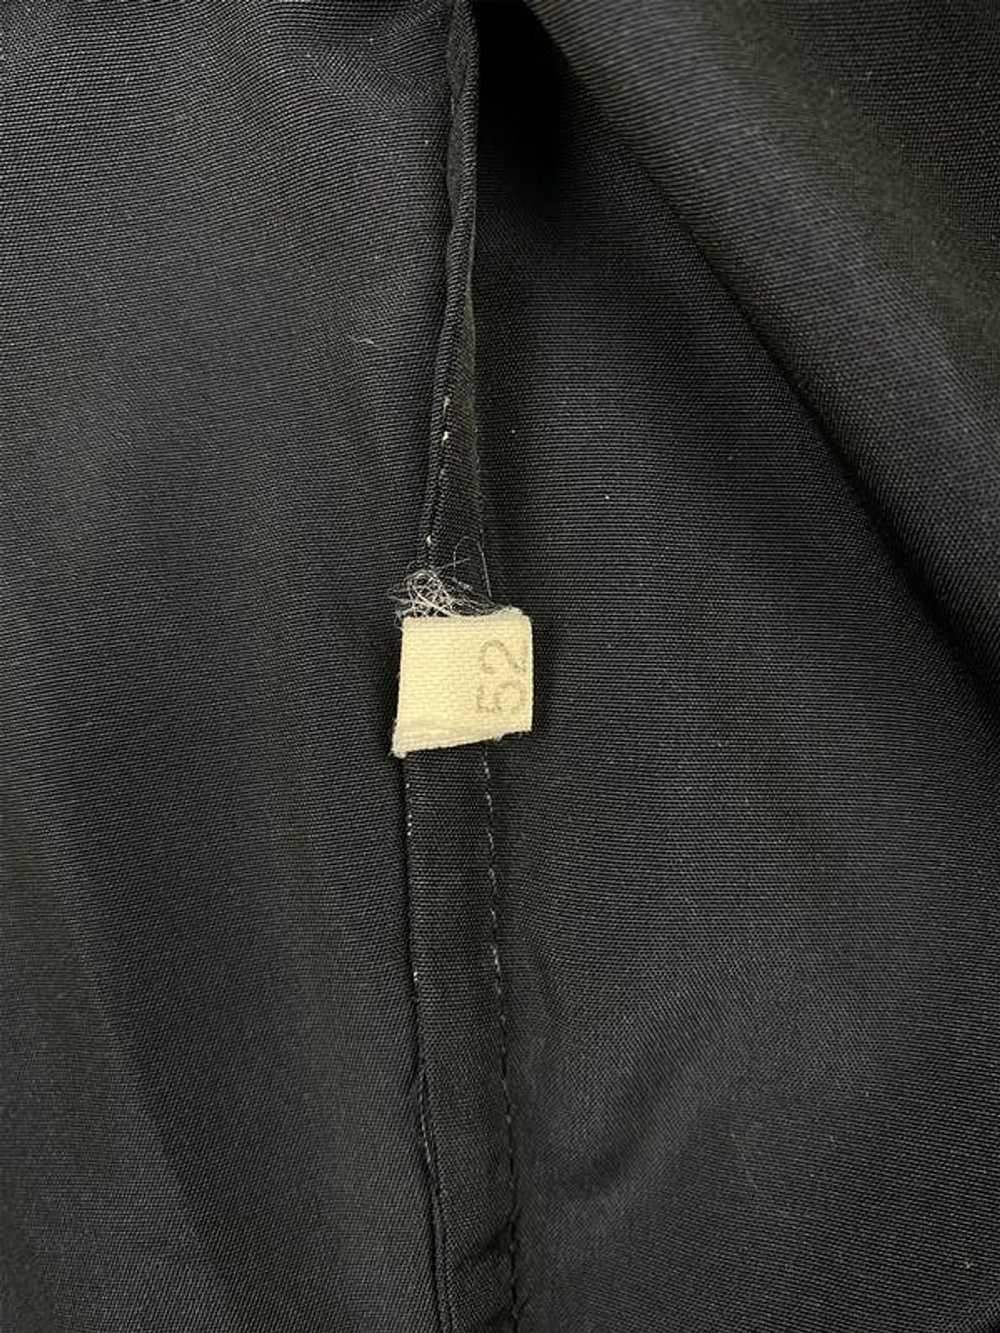 Helmut Lang Blue Pocket Cotton Jacket - image 4